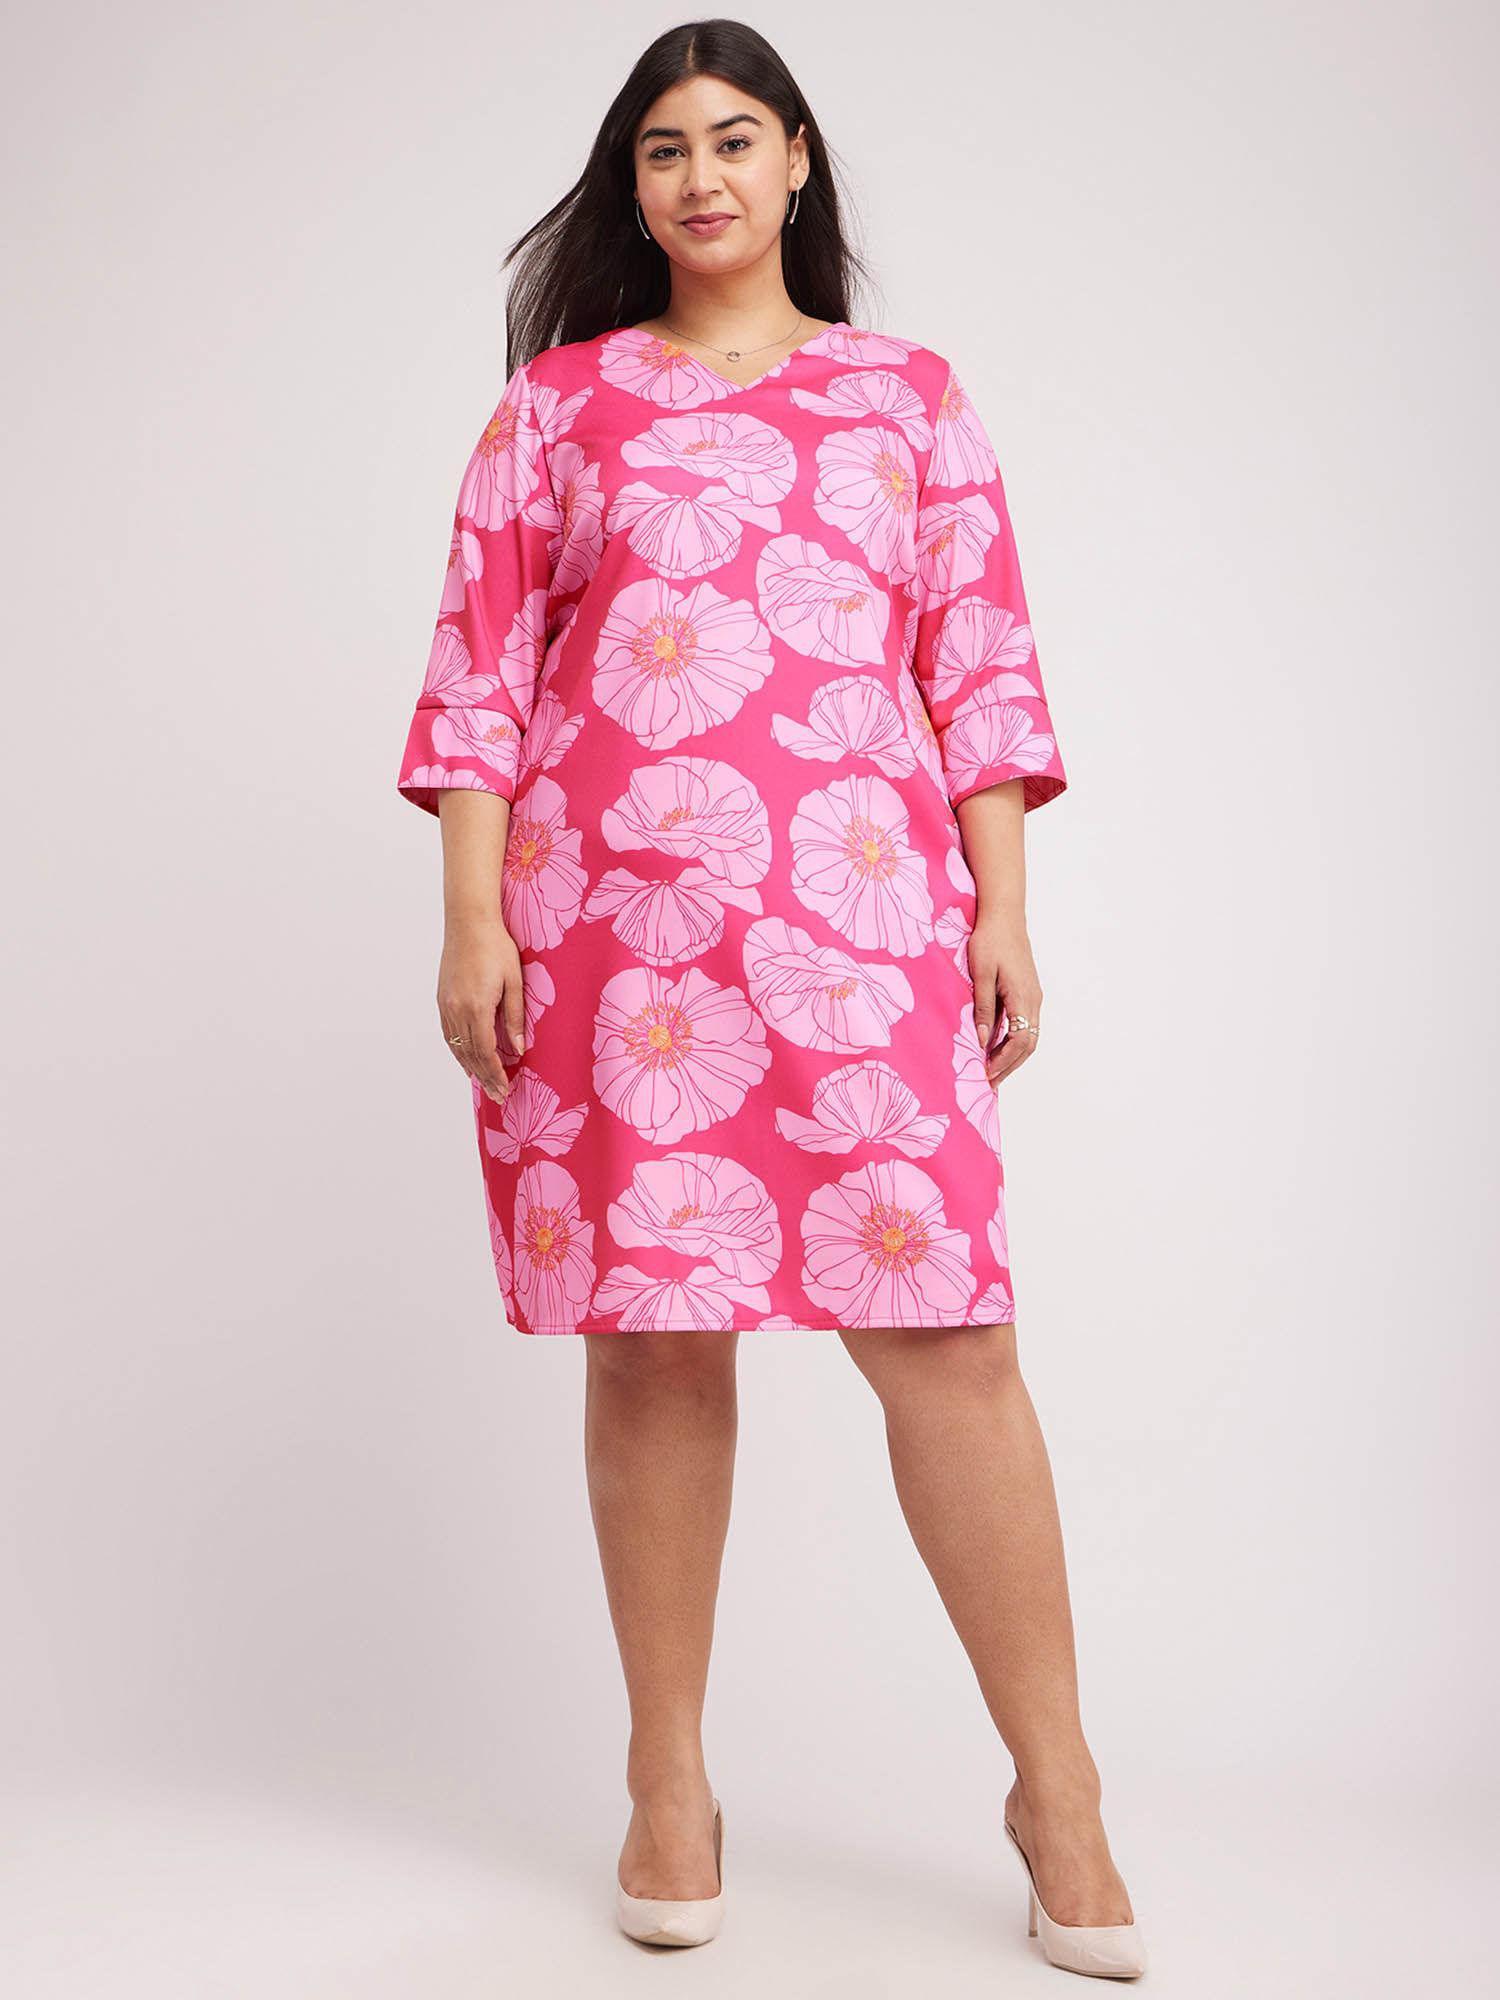 x plus size floral print shift dress - pink